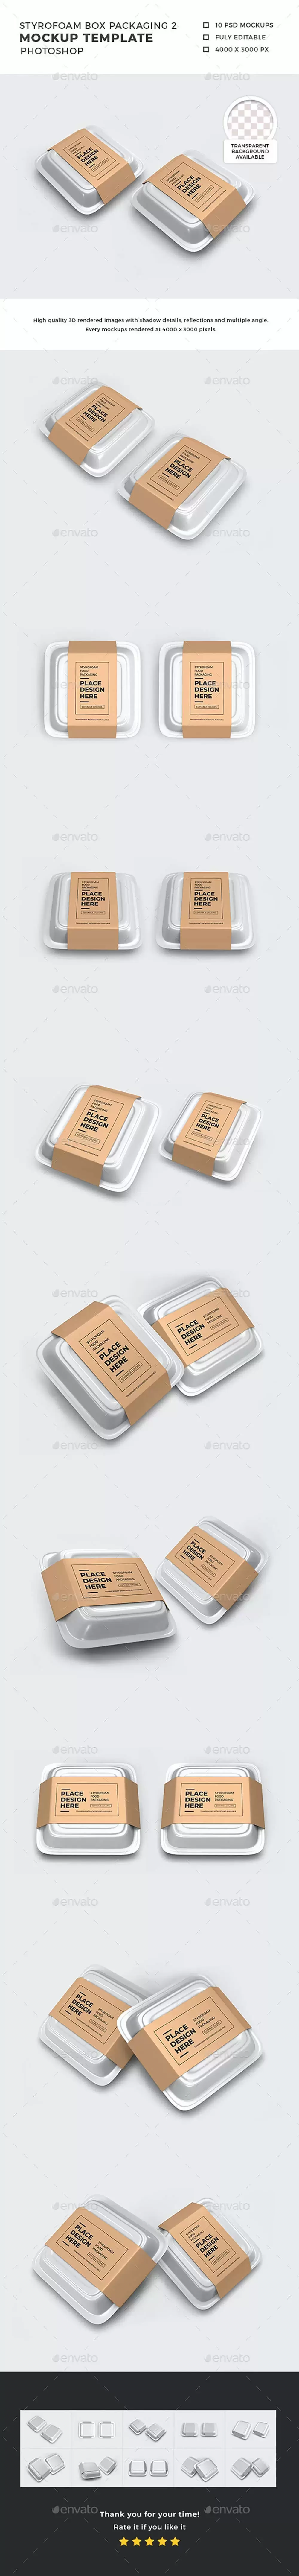 泡沫塑料食品外卖盒包装样机模板 (psd)免费下载